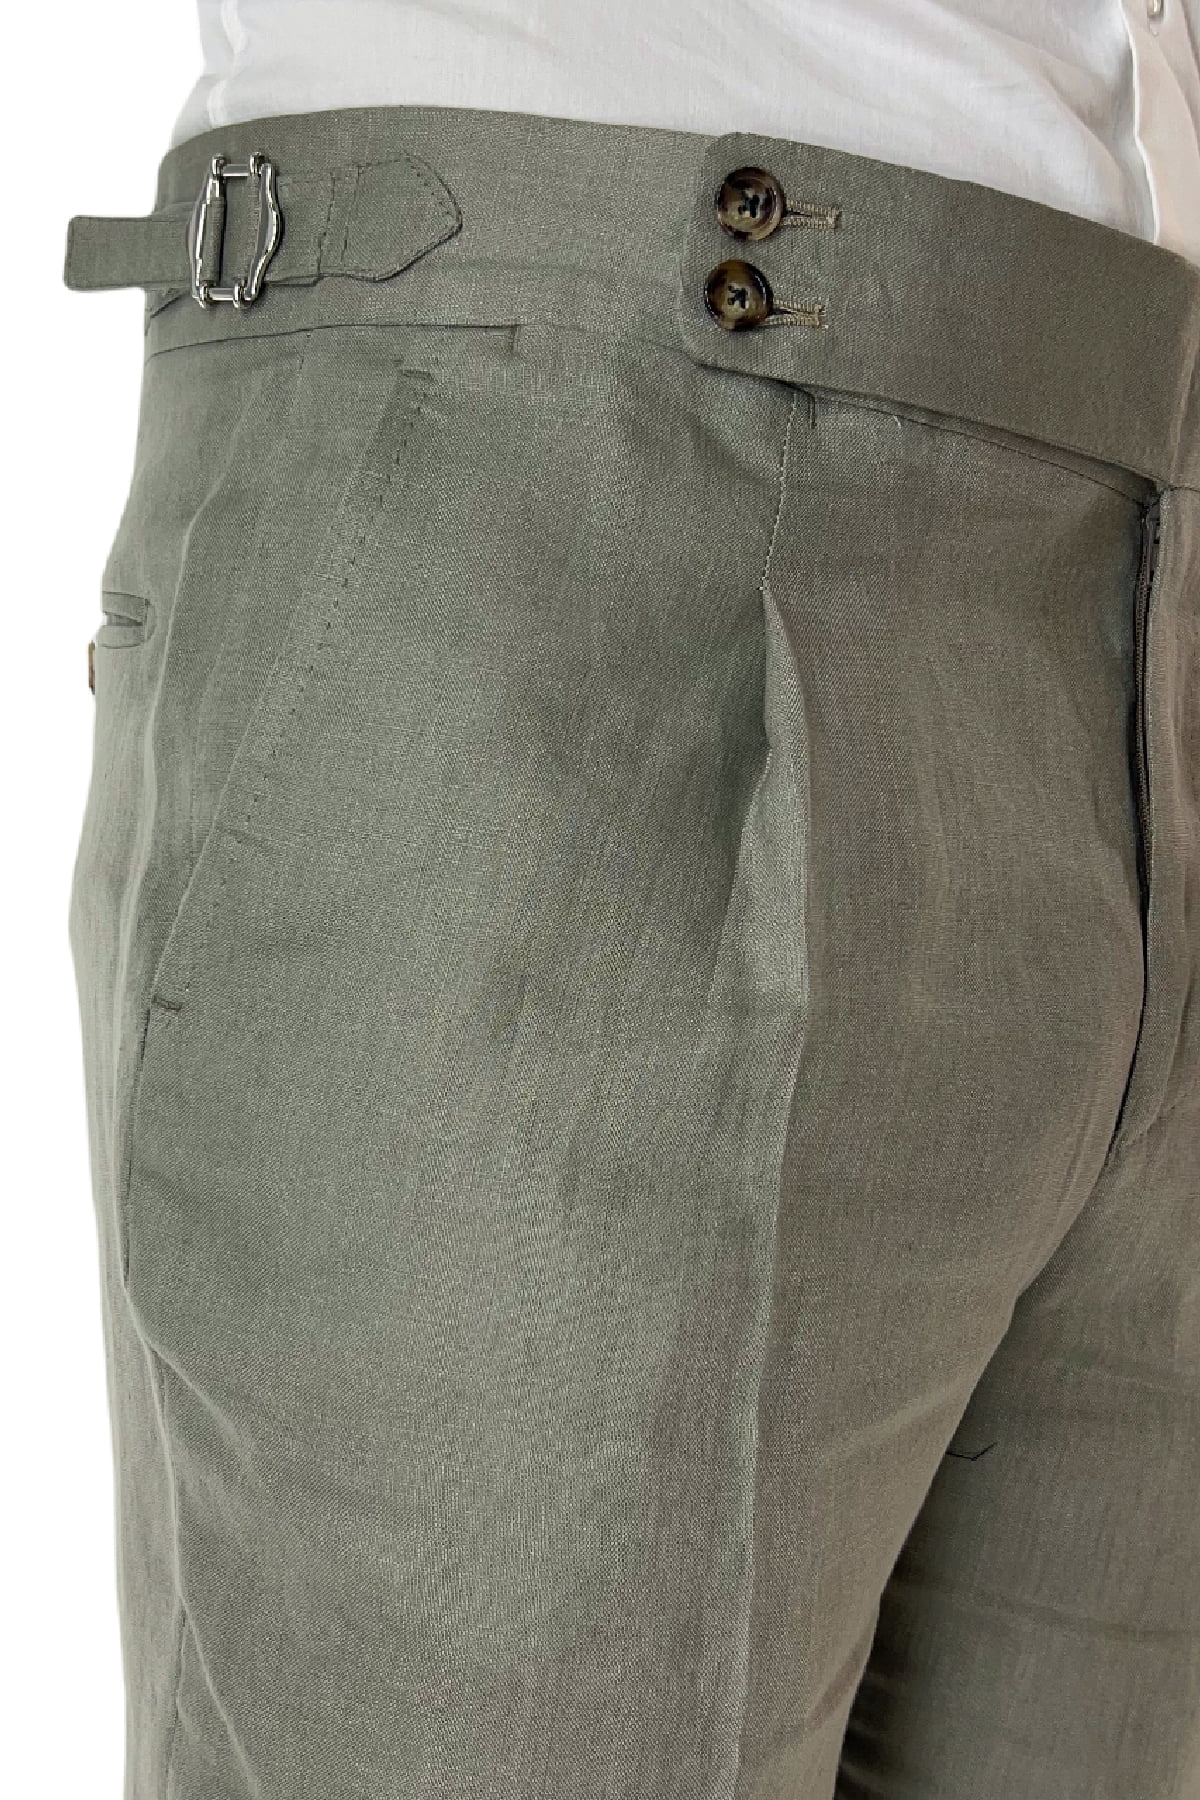 Pantalone uomo verde militare in lino 100% vita alta con pinces fibbie laterali e risvolto 4cm